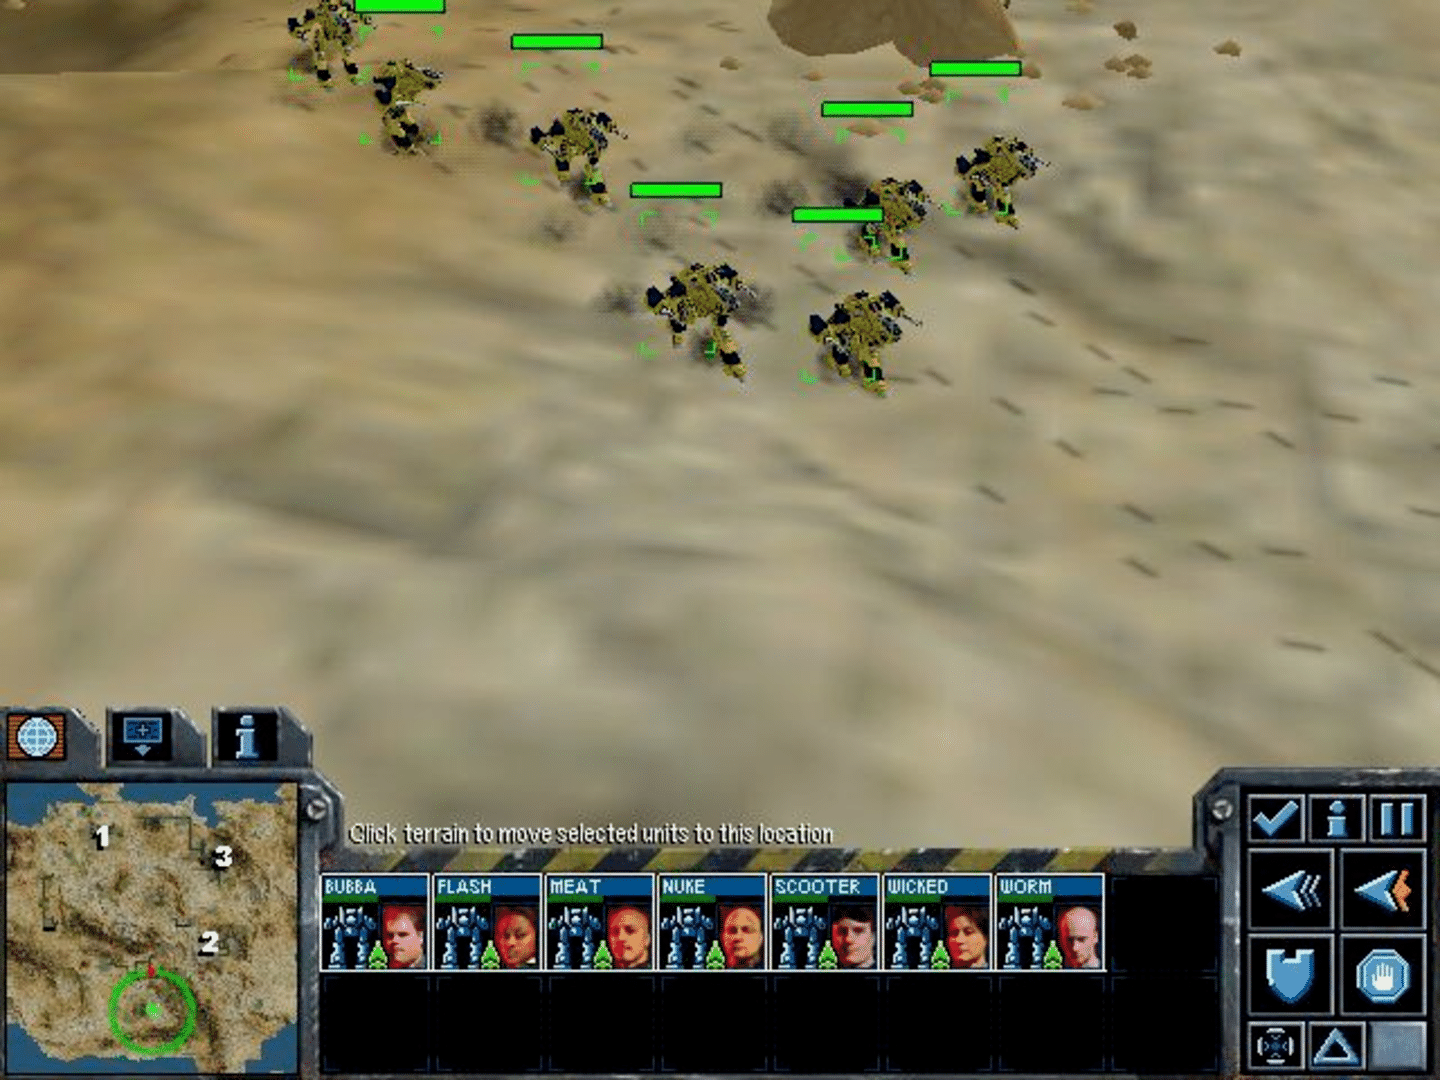 MechCommander 2 screenshot